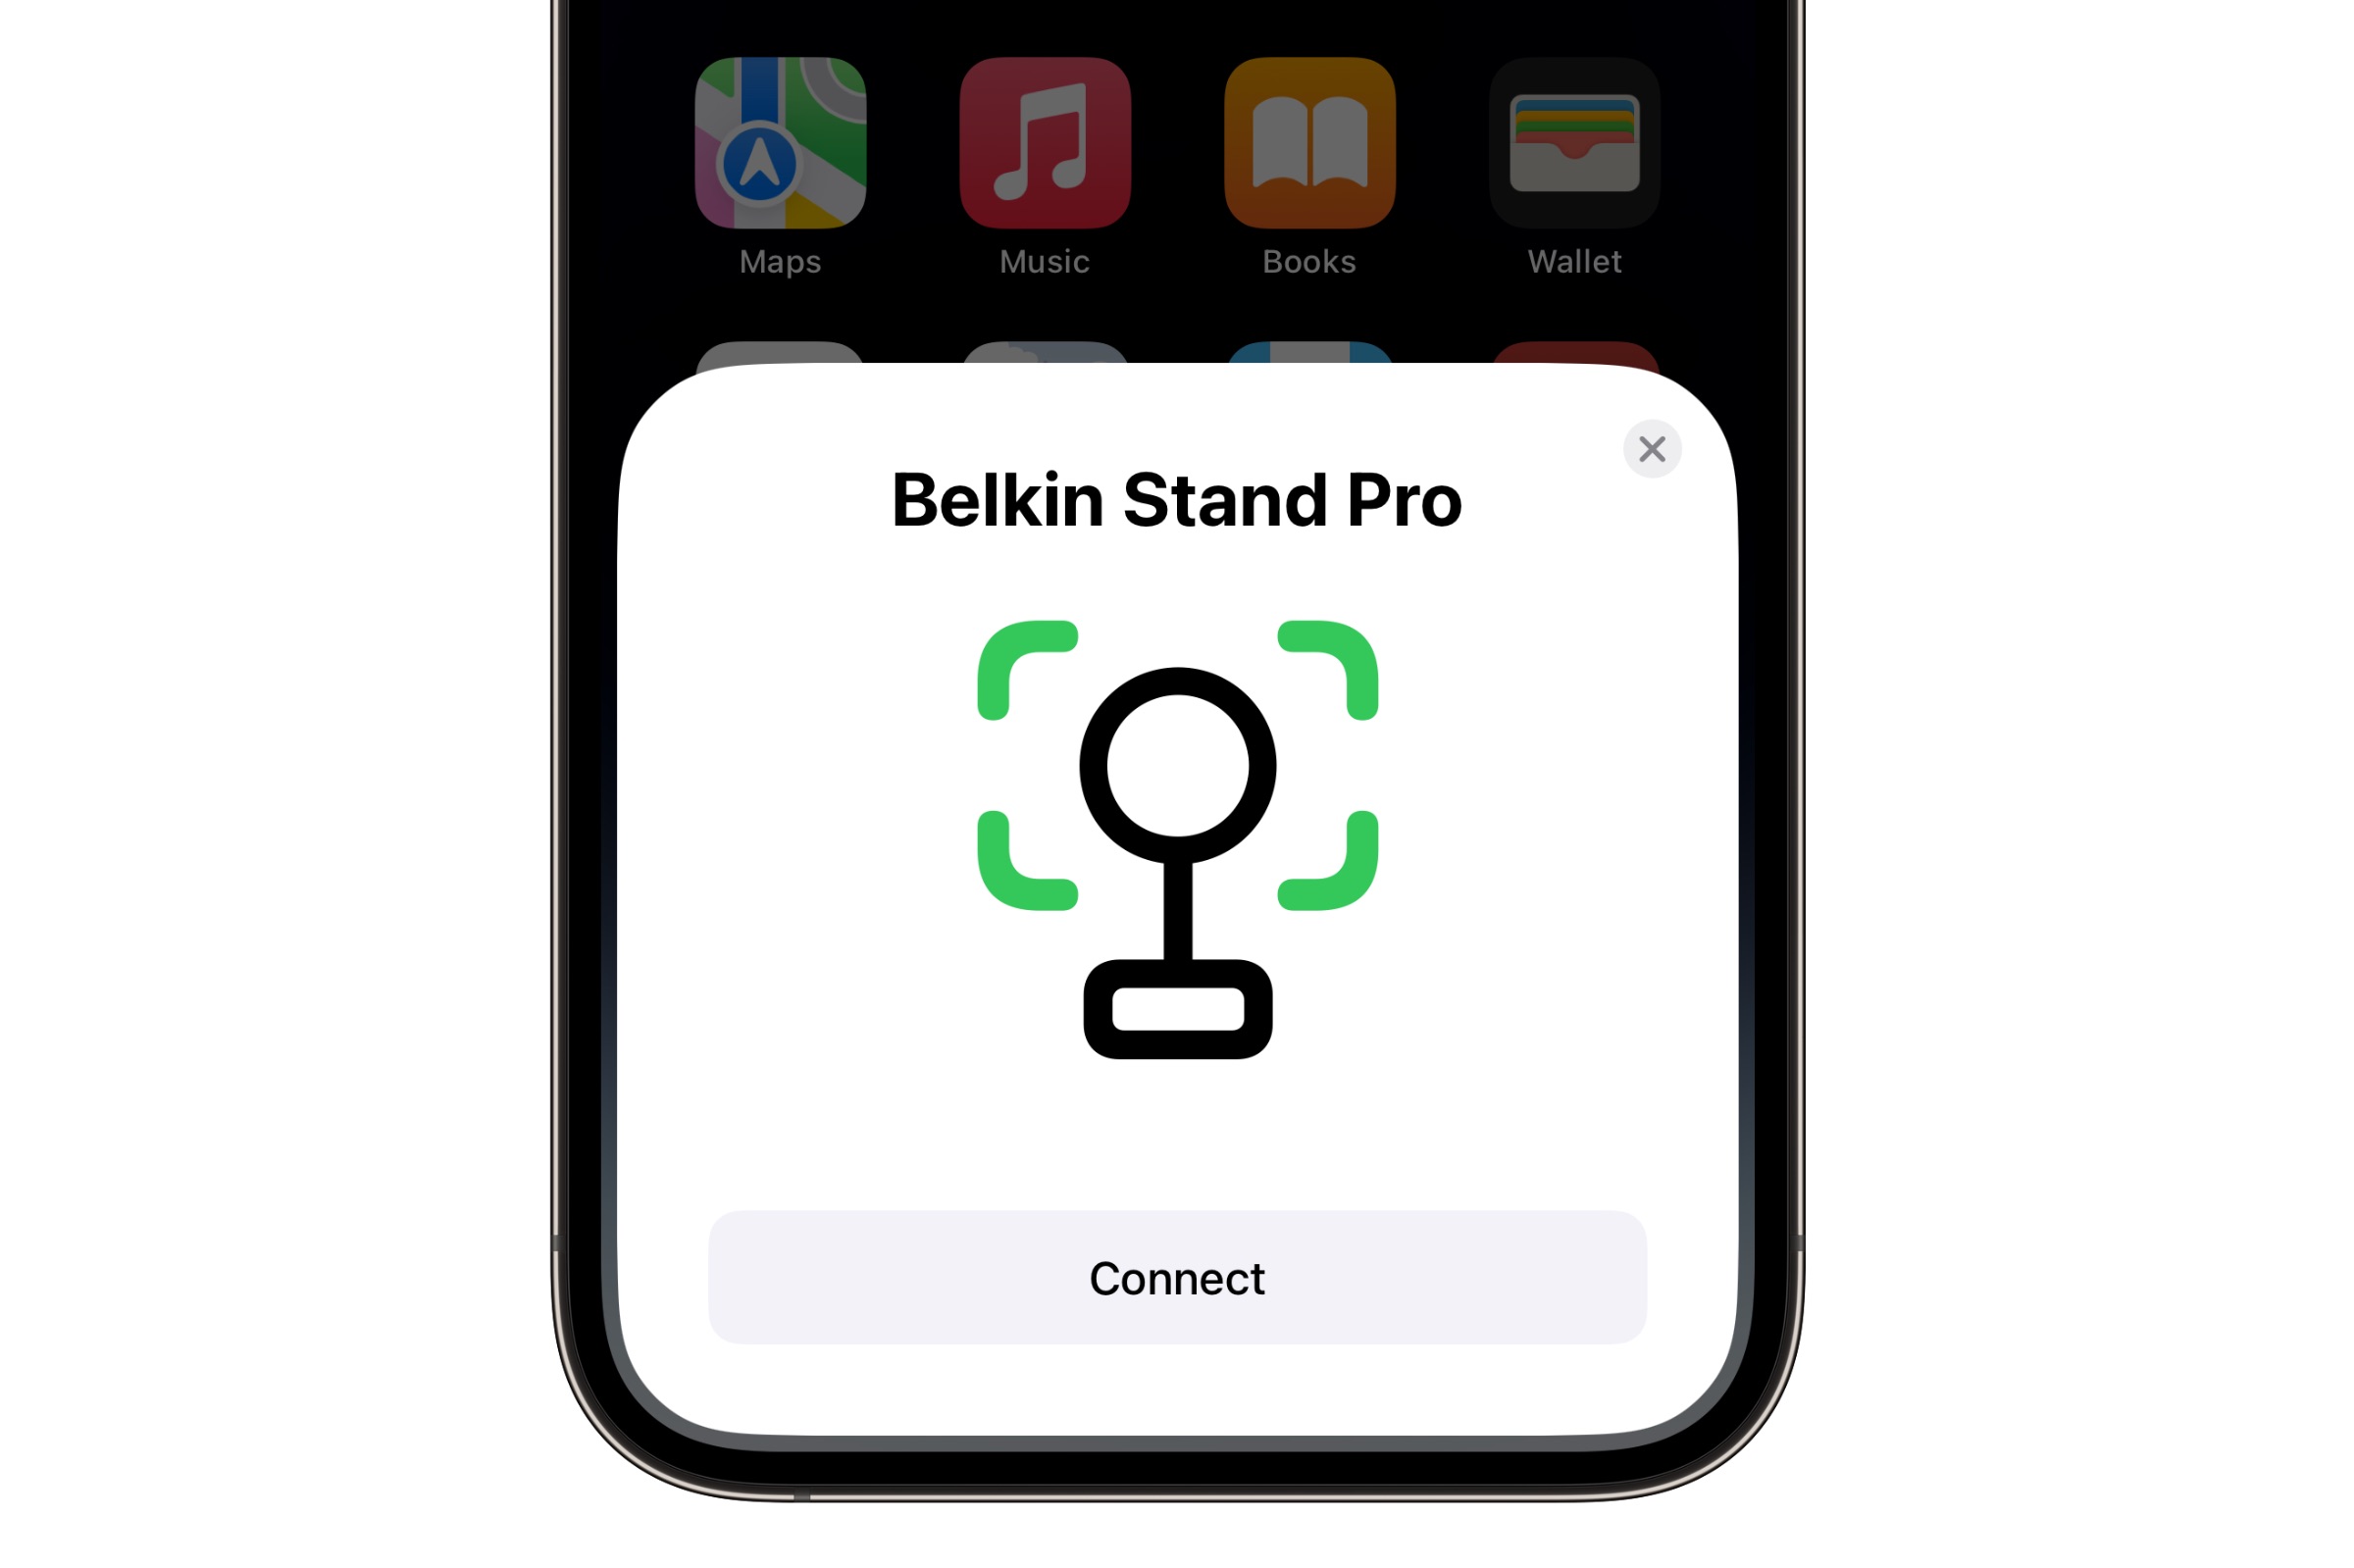 iPhone DockKit pairing screen for Belkin Stand Pro.